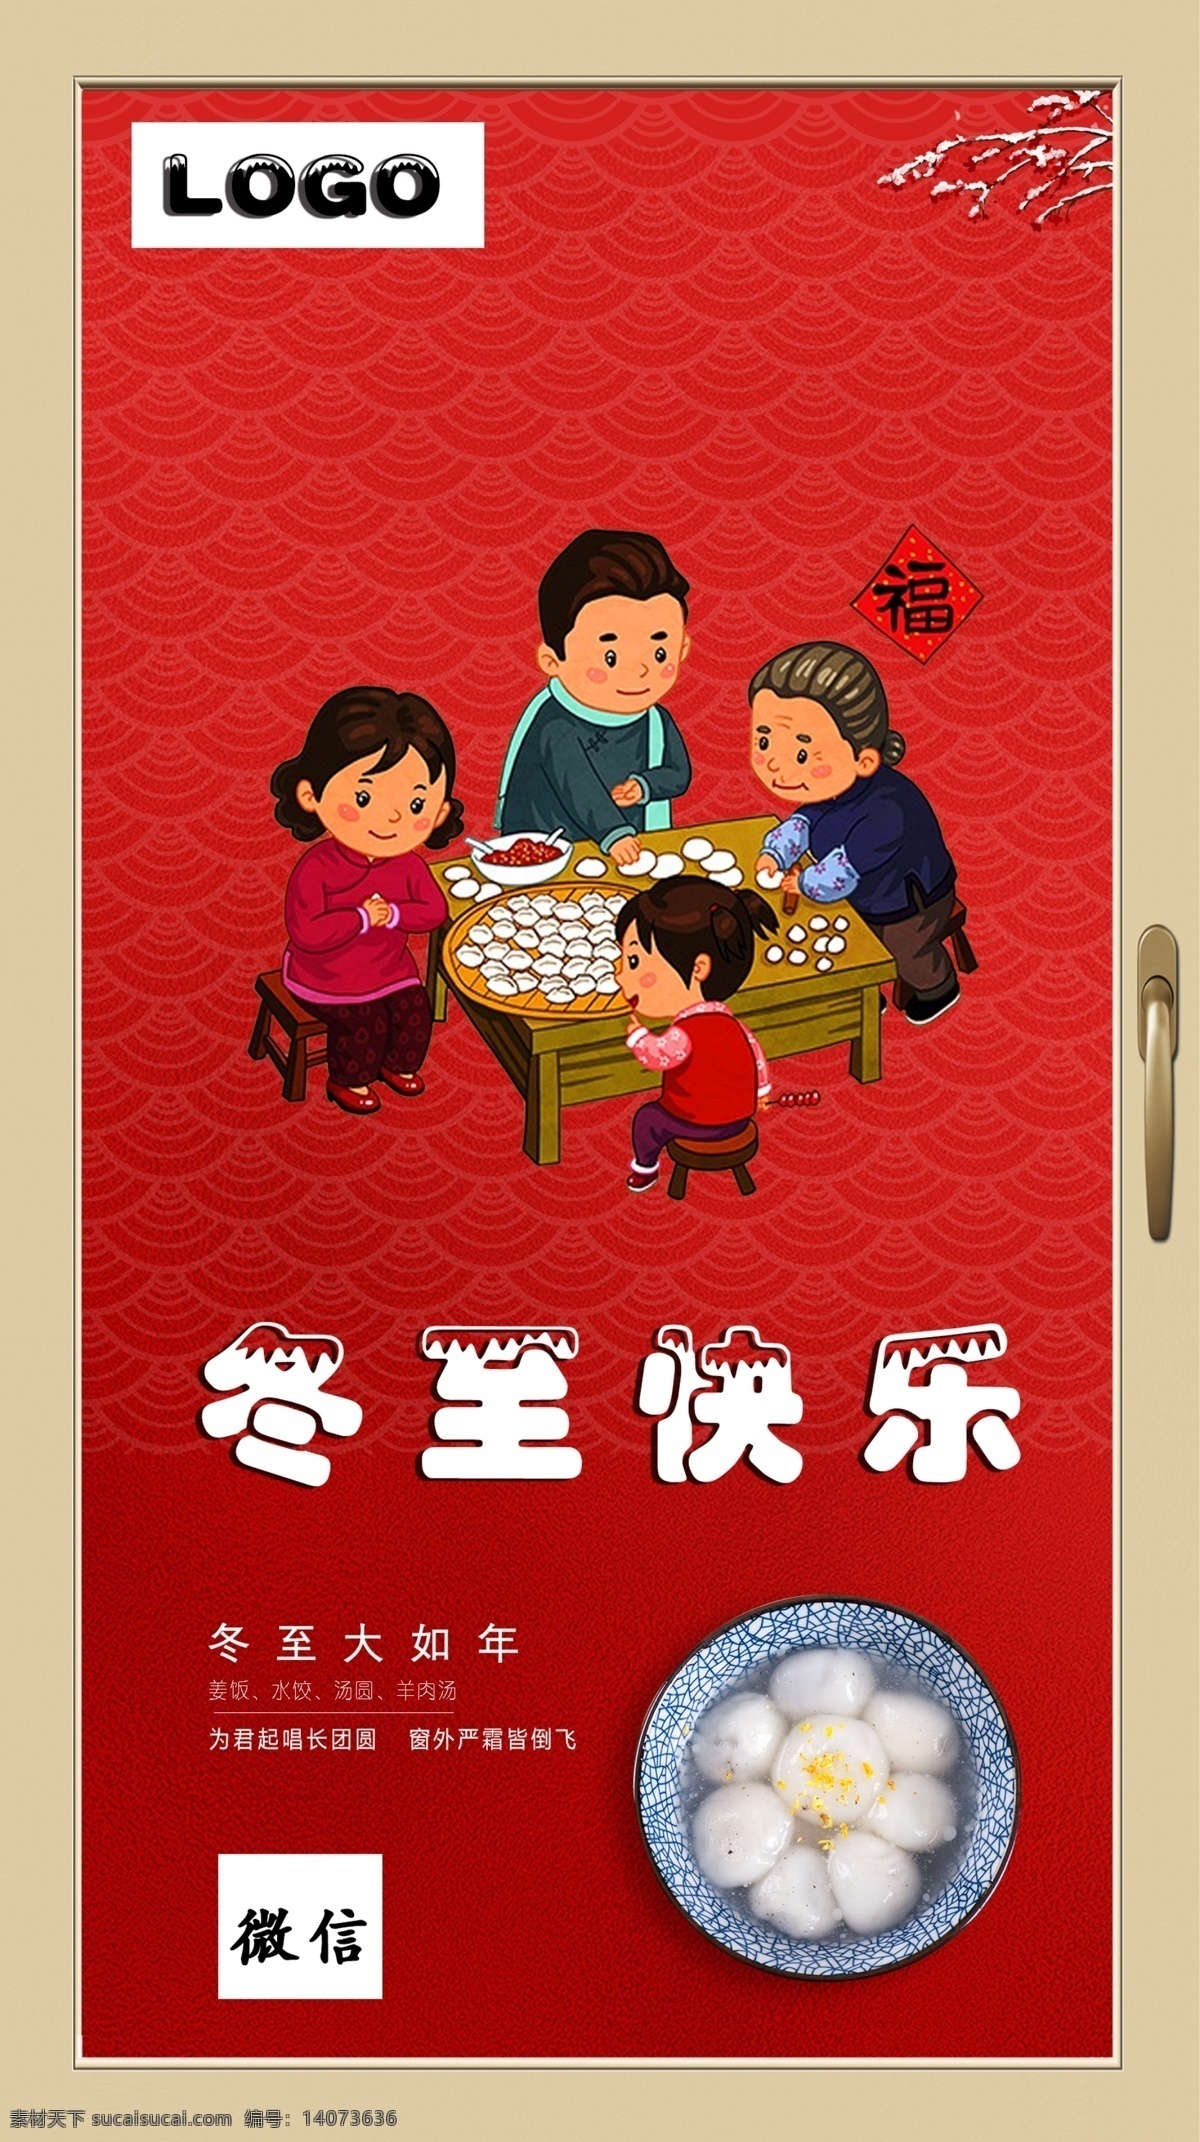 冬至快乐 新年 红色 包饺子 节气 过年的气息